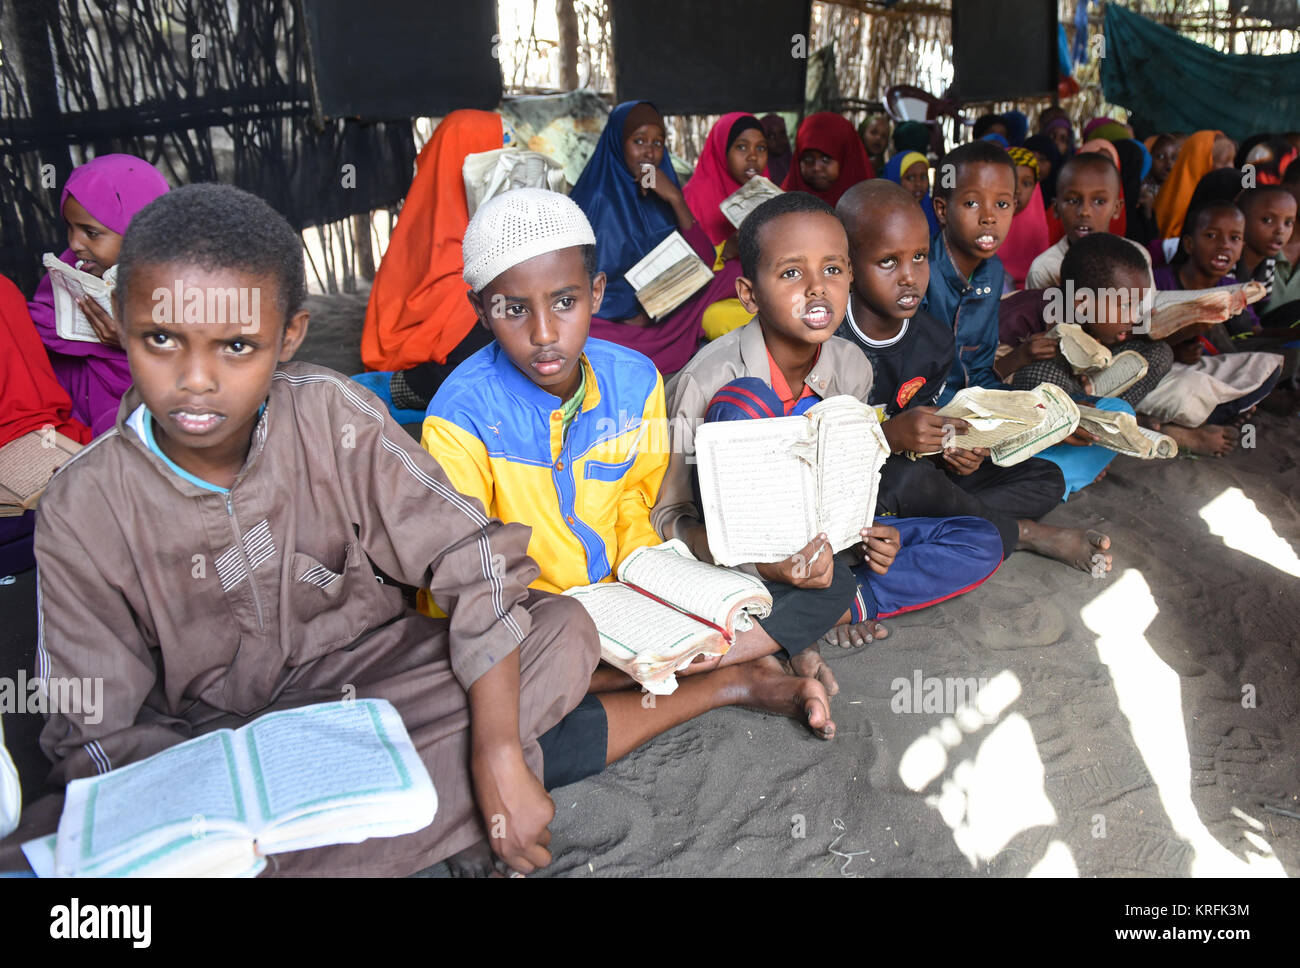 Dadaab, Kenia. 19 Dez, 2017. Die somalische Flüchtlingskinder Studie in einer Schule im Flüchtlingslager Dadaab, Kenia, Dez. 19, 2017. Das UN-Flüchtlingshilfswerk sagte Montag, den es hat einige 74,141 somalische Flüchtlinge aus Kenia am 15. November zurückgeführt, da die freiwillige Rückkehr Übung vor drei Jahren begann. Credit: Li Baishun/Xinhua/Alamy leben Nachrichten Stockfoto